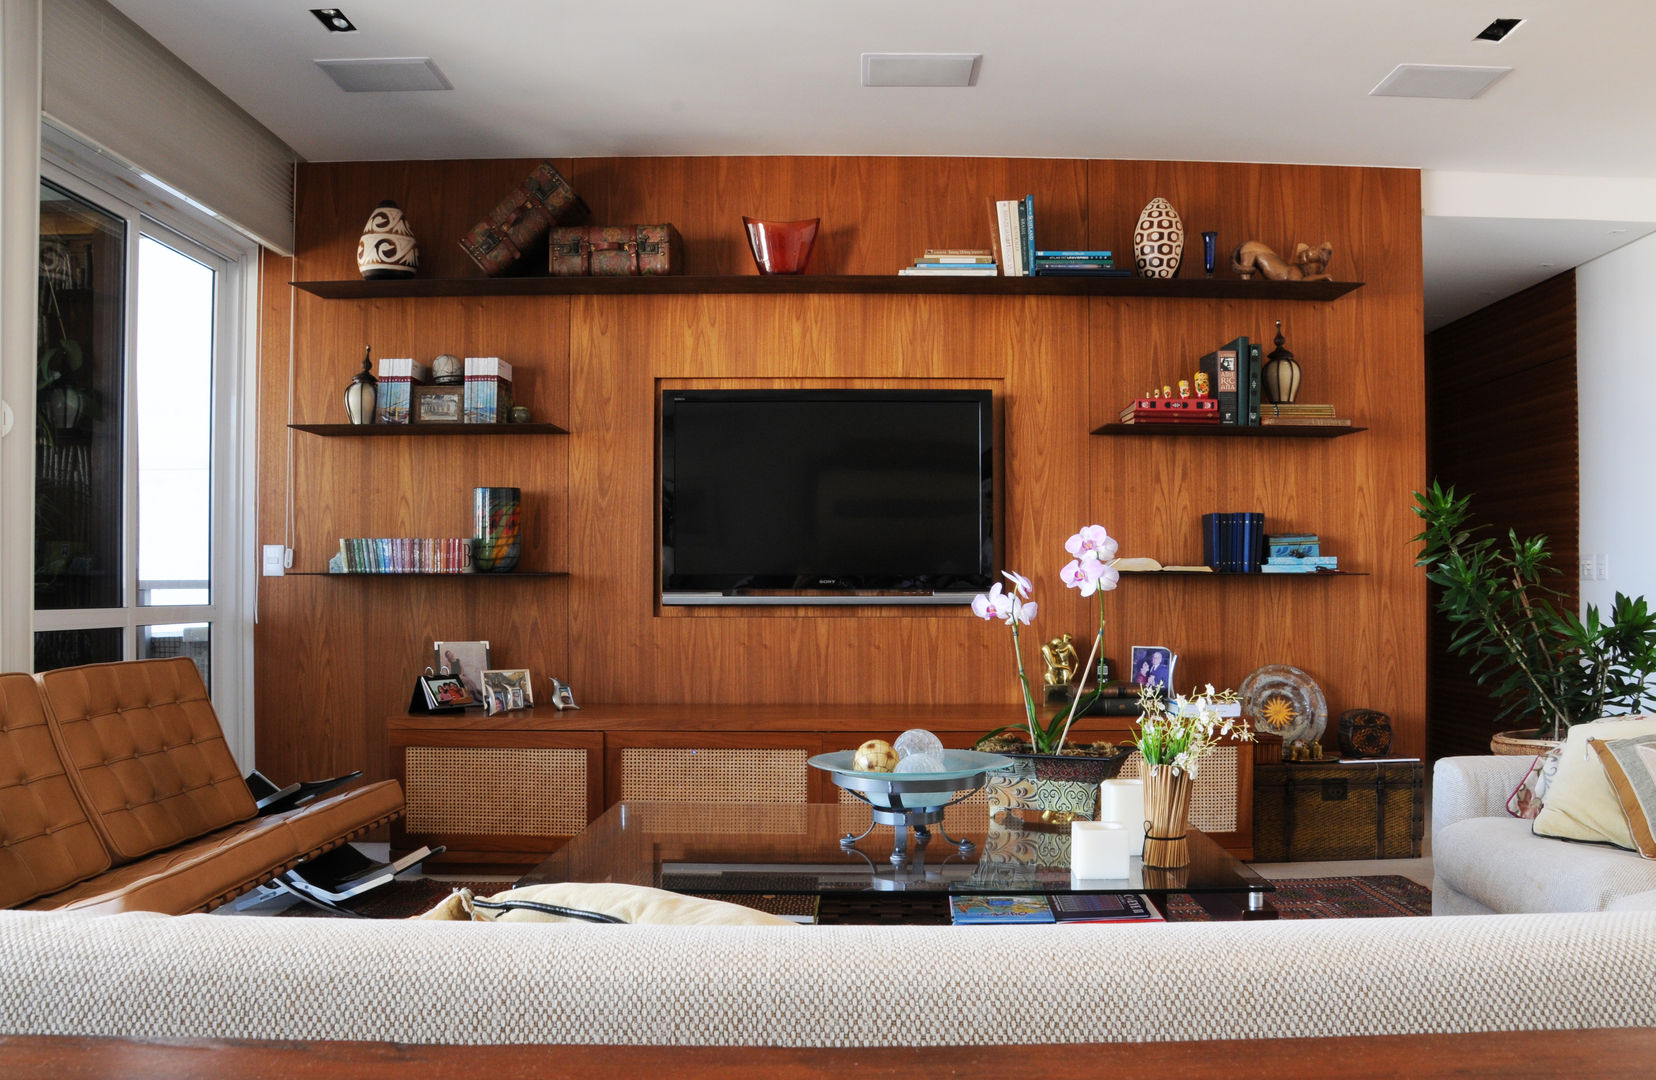 Apartamento Vinicius , daniela kuhn arquitetura daniela kuhn arquitetura Modern living room